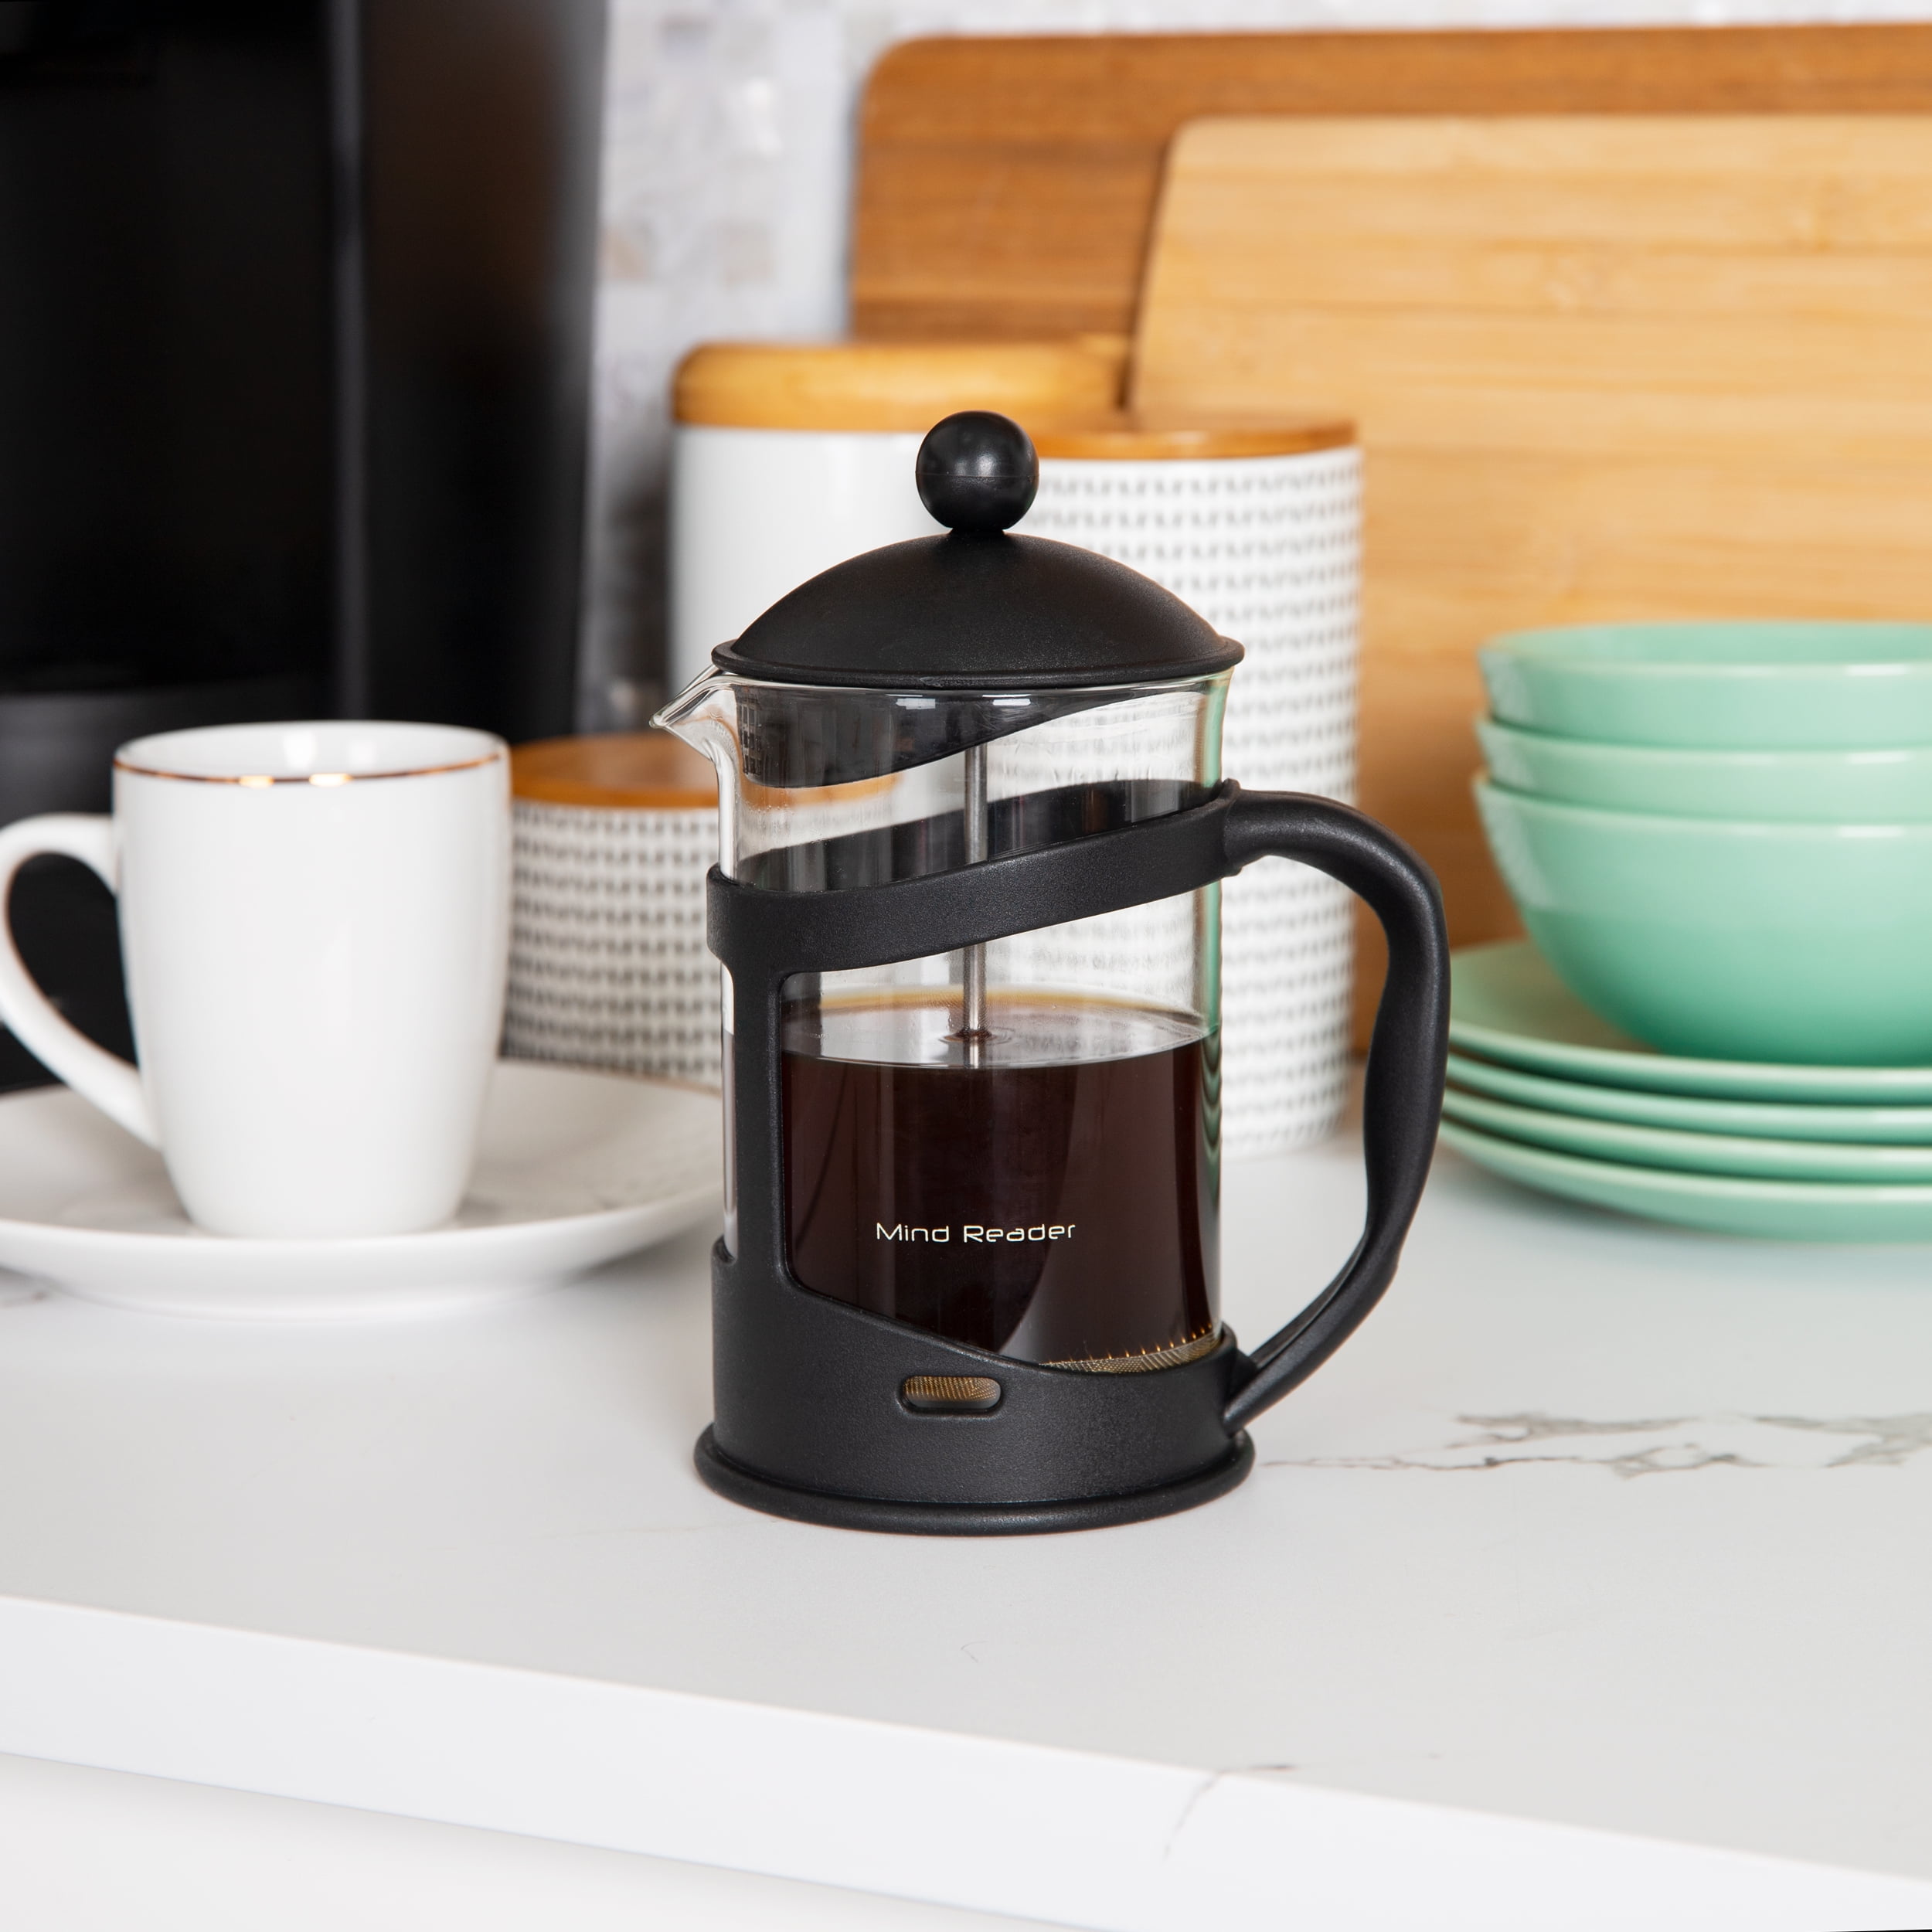 FinalPress cup tea and coffee maker - Geeky Gadgets